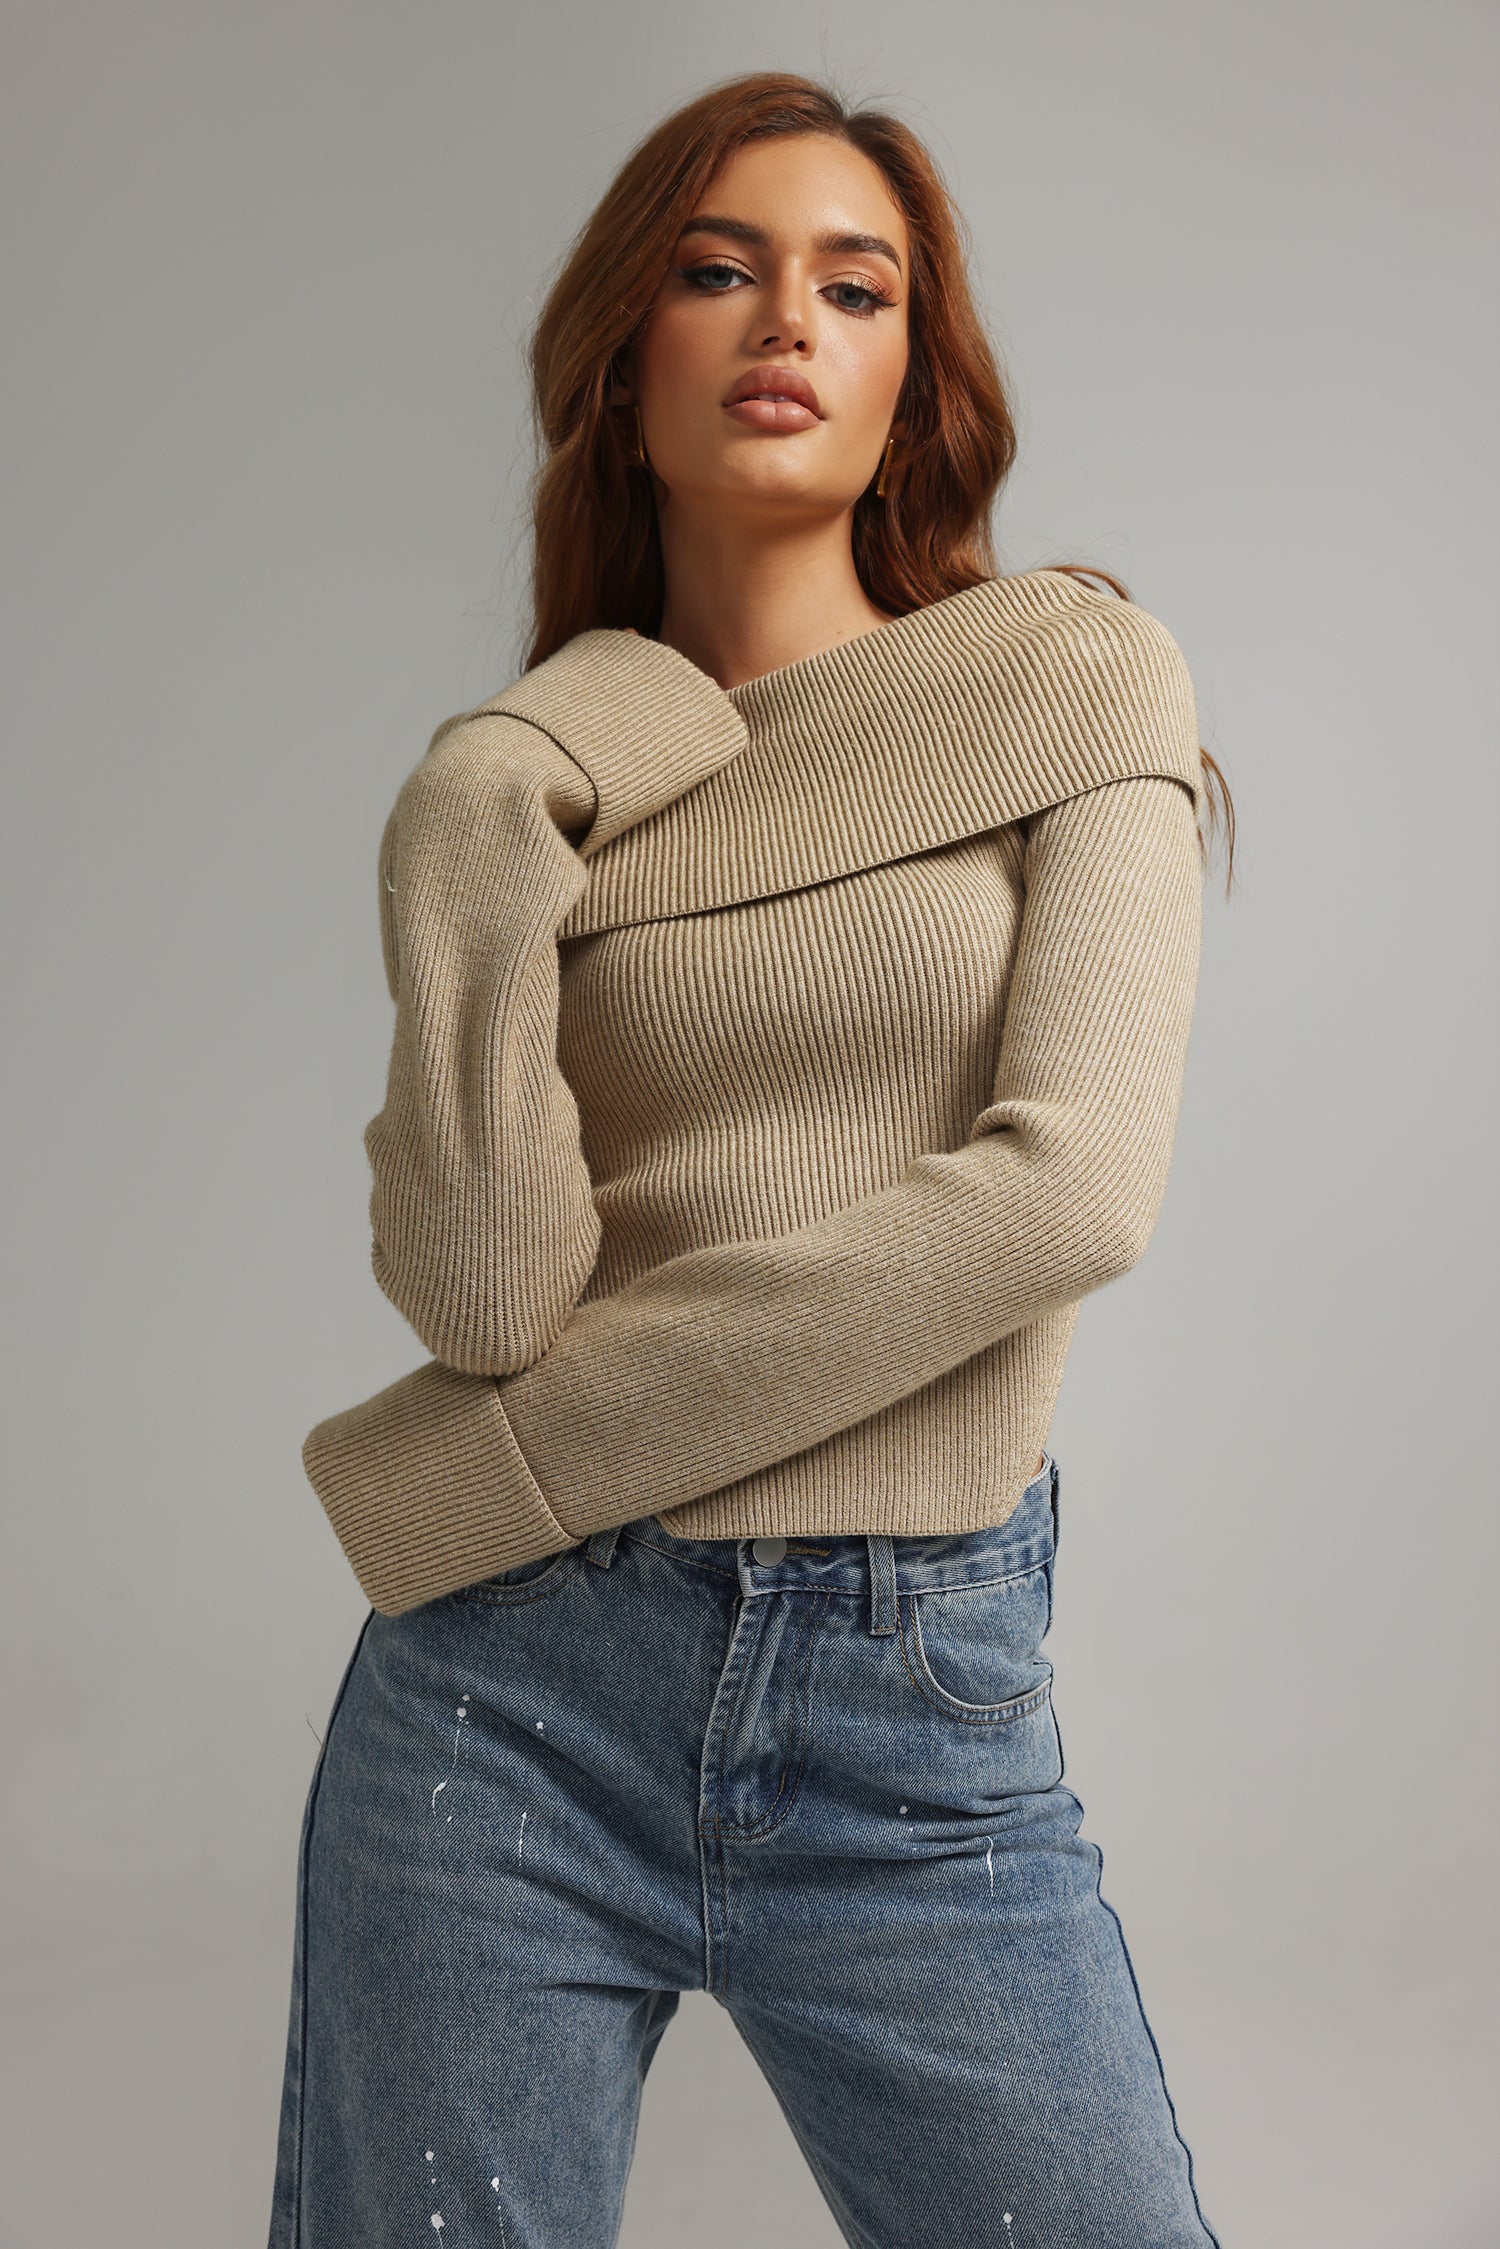 Yarera Off-Shoulder Sweater - Tan